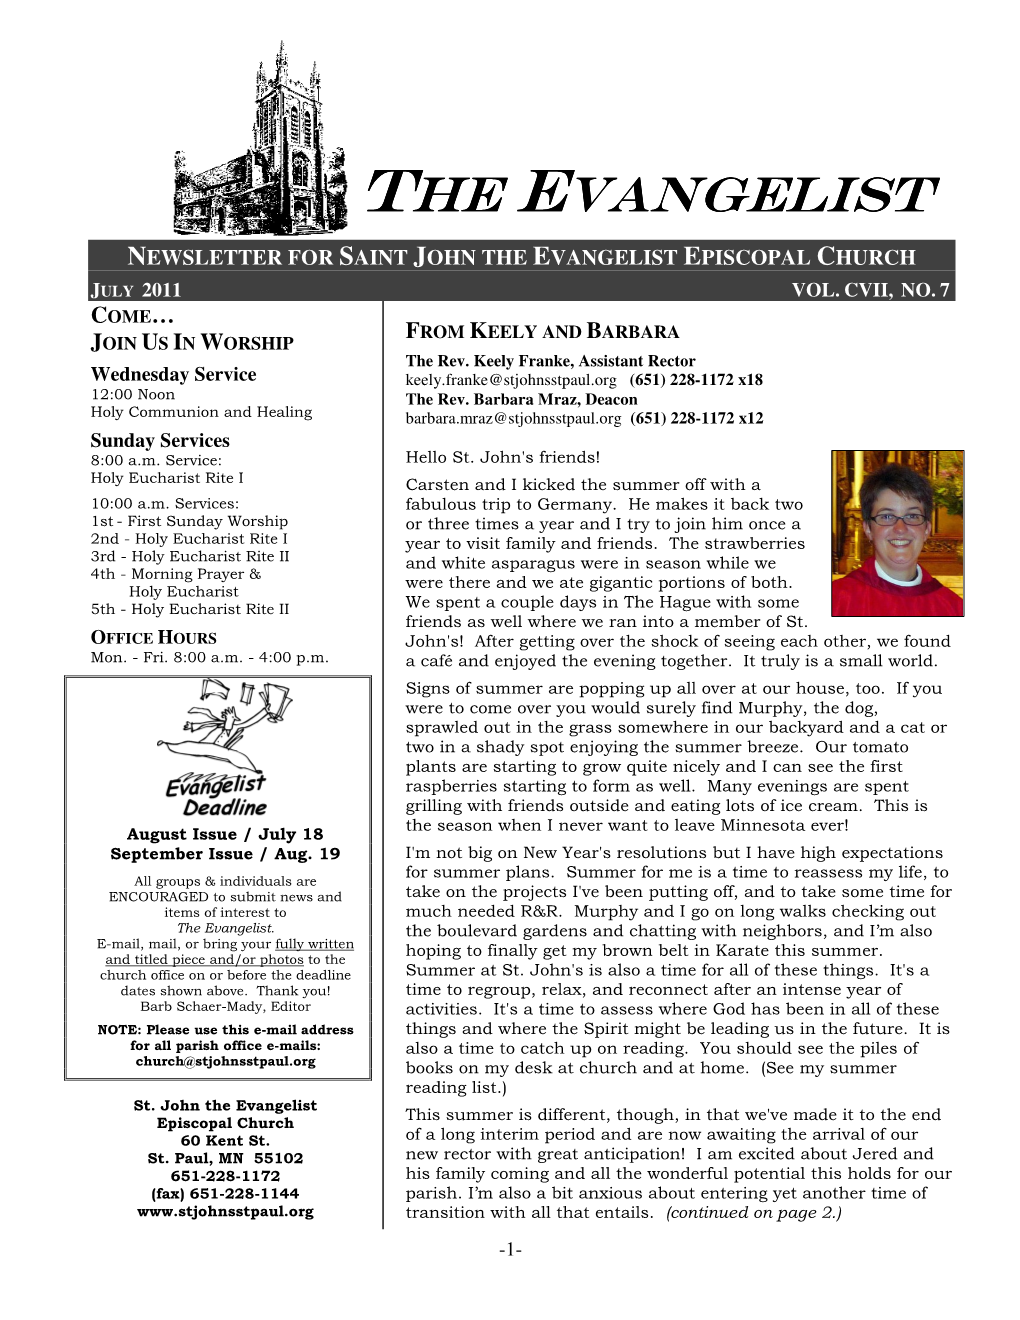 The Evangelist Episcopal Church